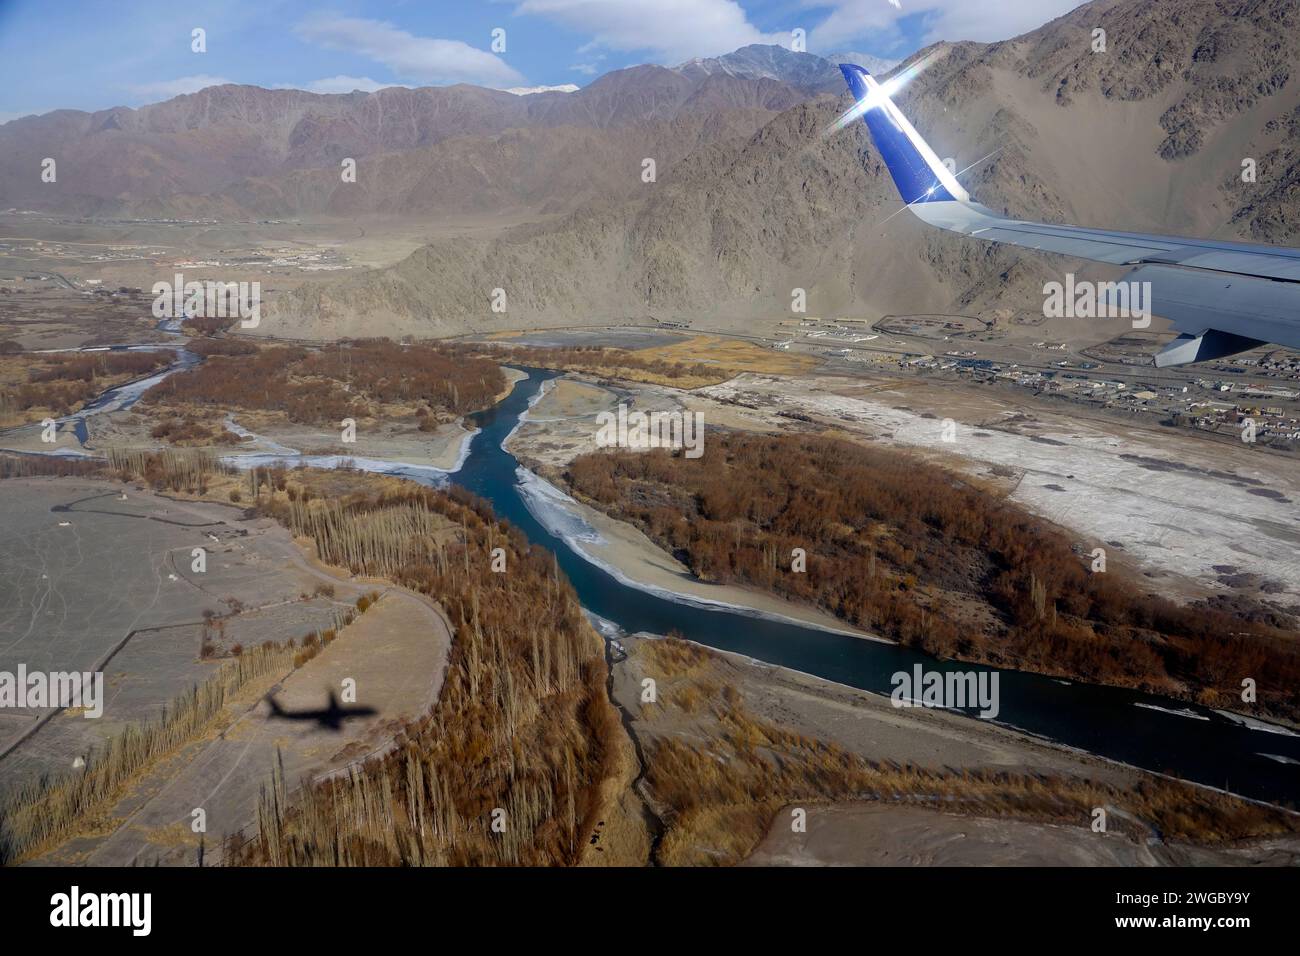 Vue aérienne d'une aile d'avion et ombre, Leh, Ladakh, Himalaya indien, Inde Banque D'Images